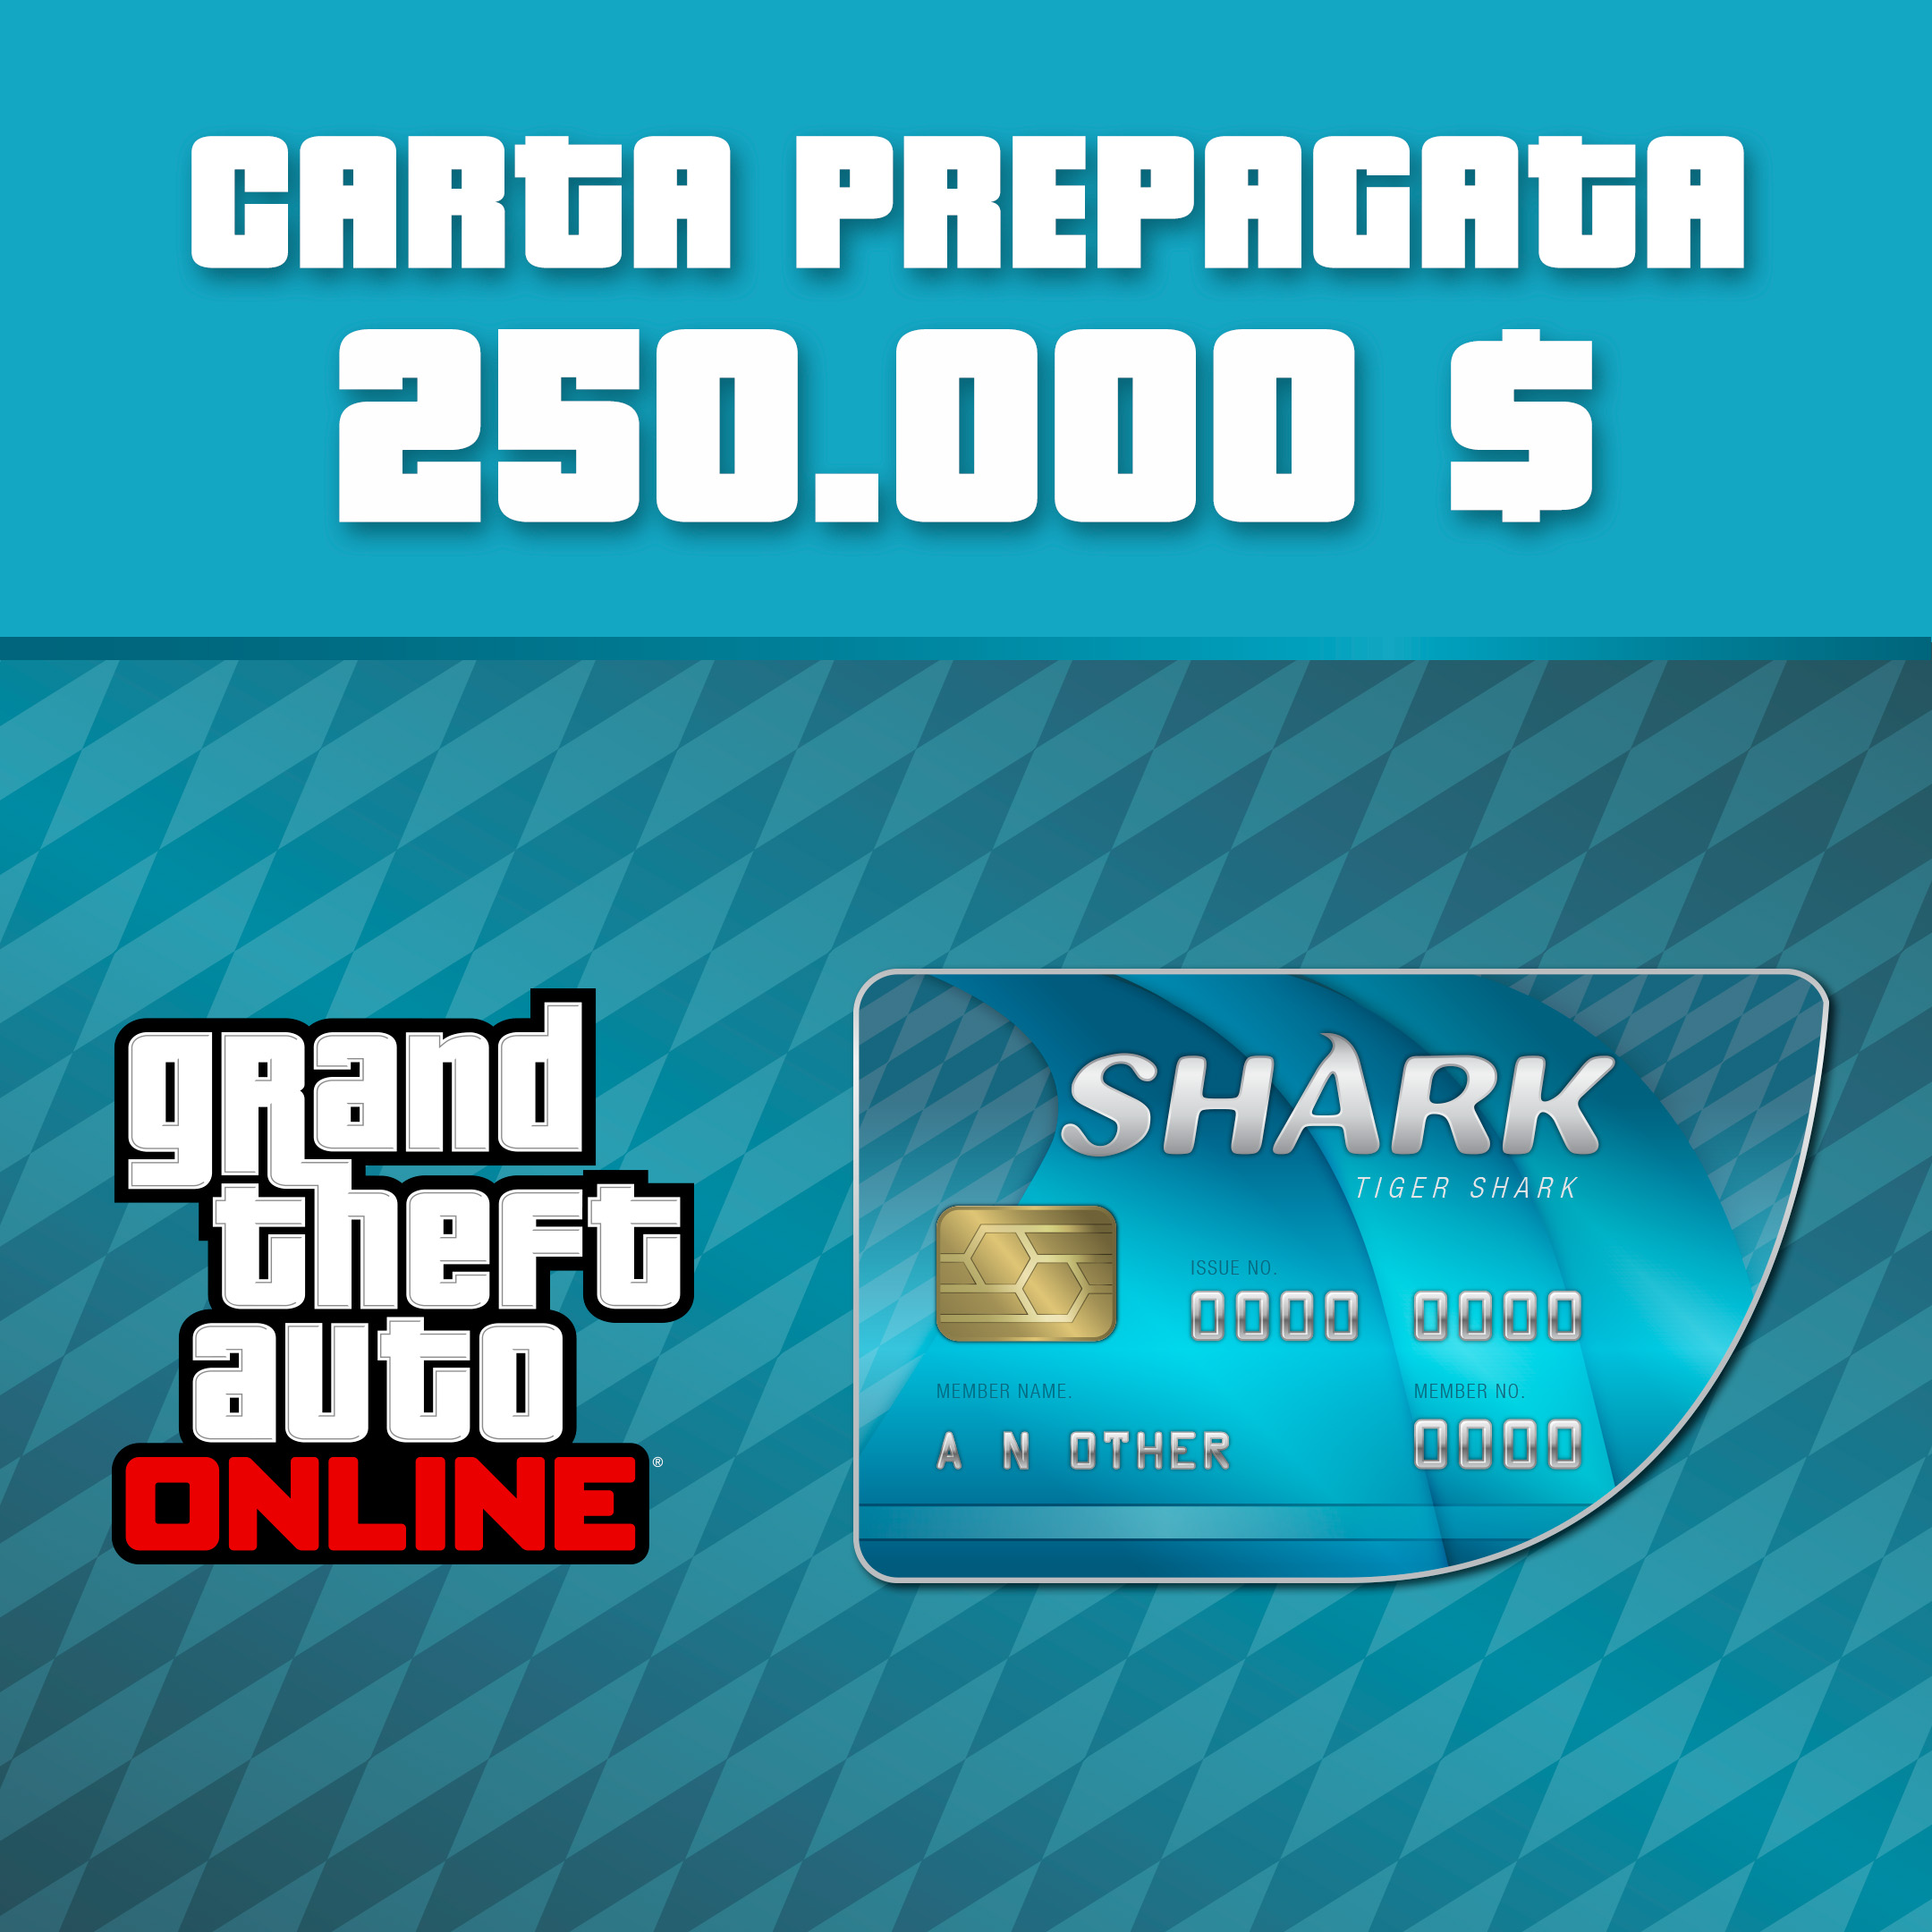 Grand Theft Auto Online: carte Shark, Negozio ufficiale